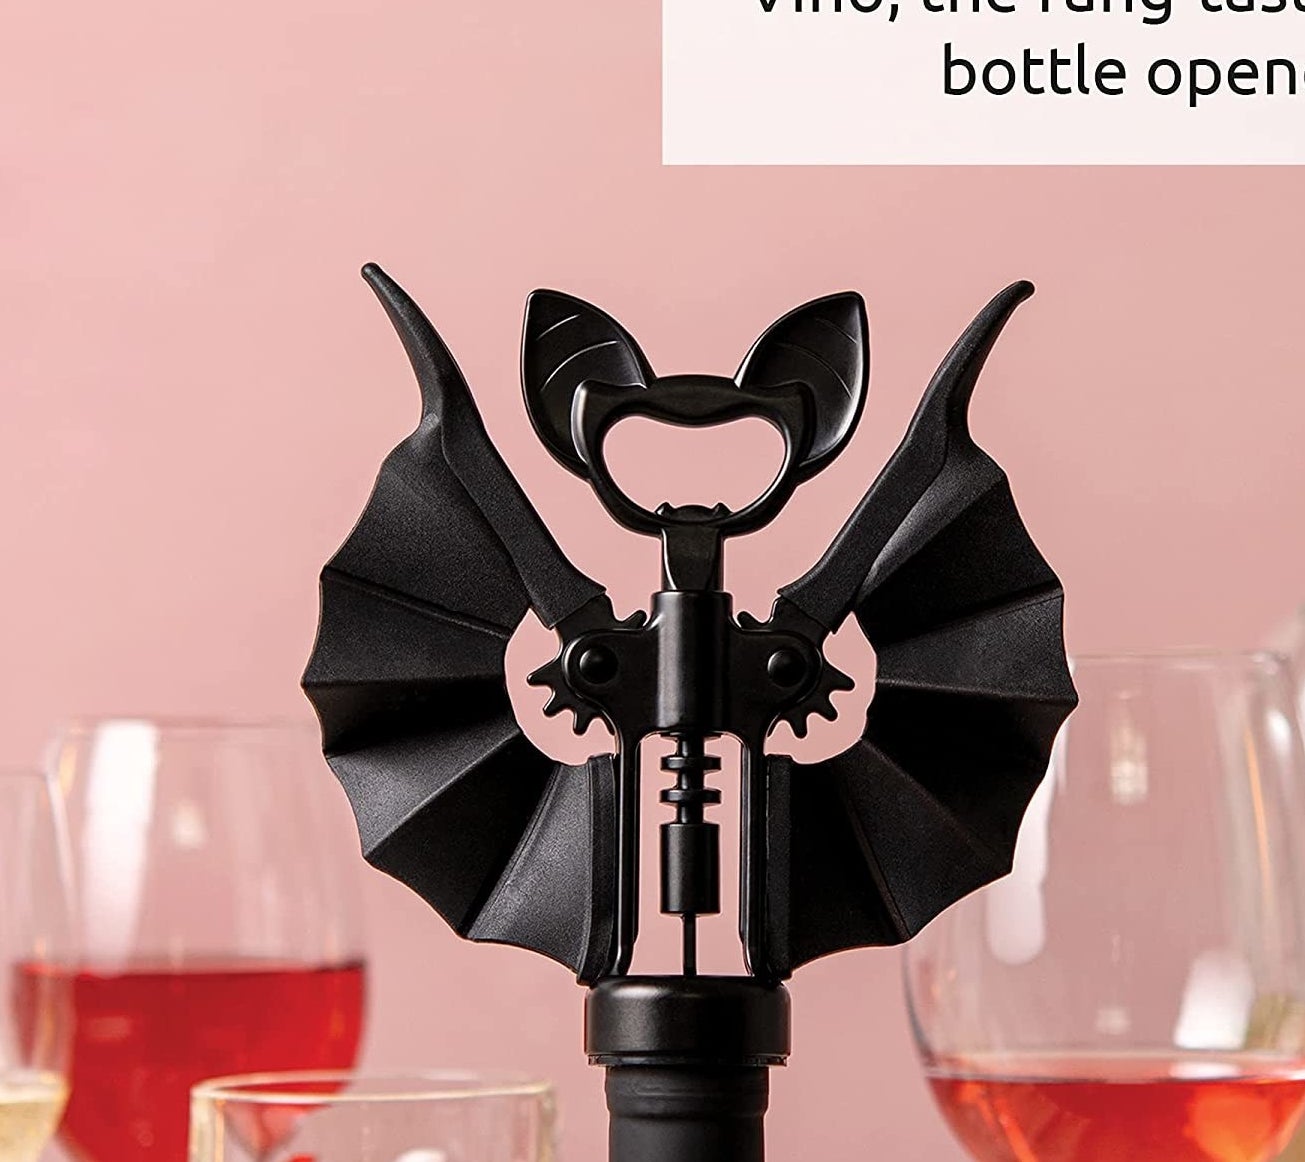 a bat-shaped corkscrew inside a wine bottle